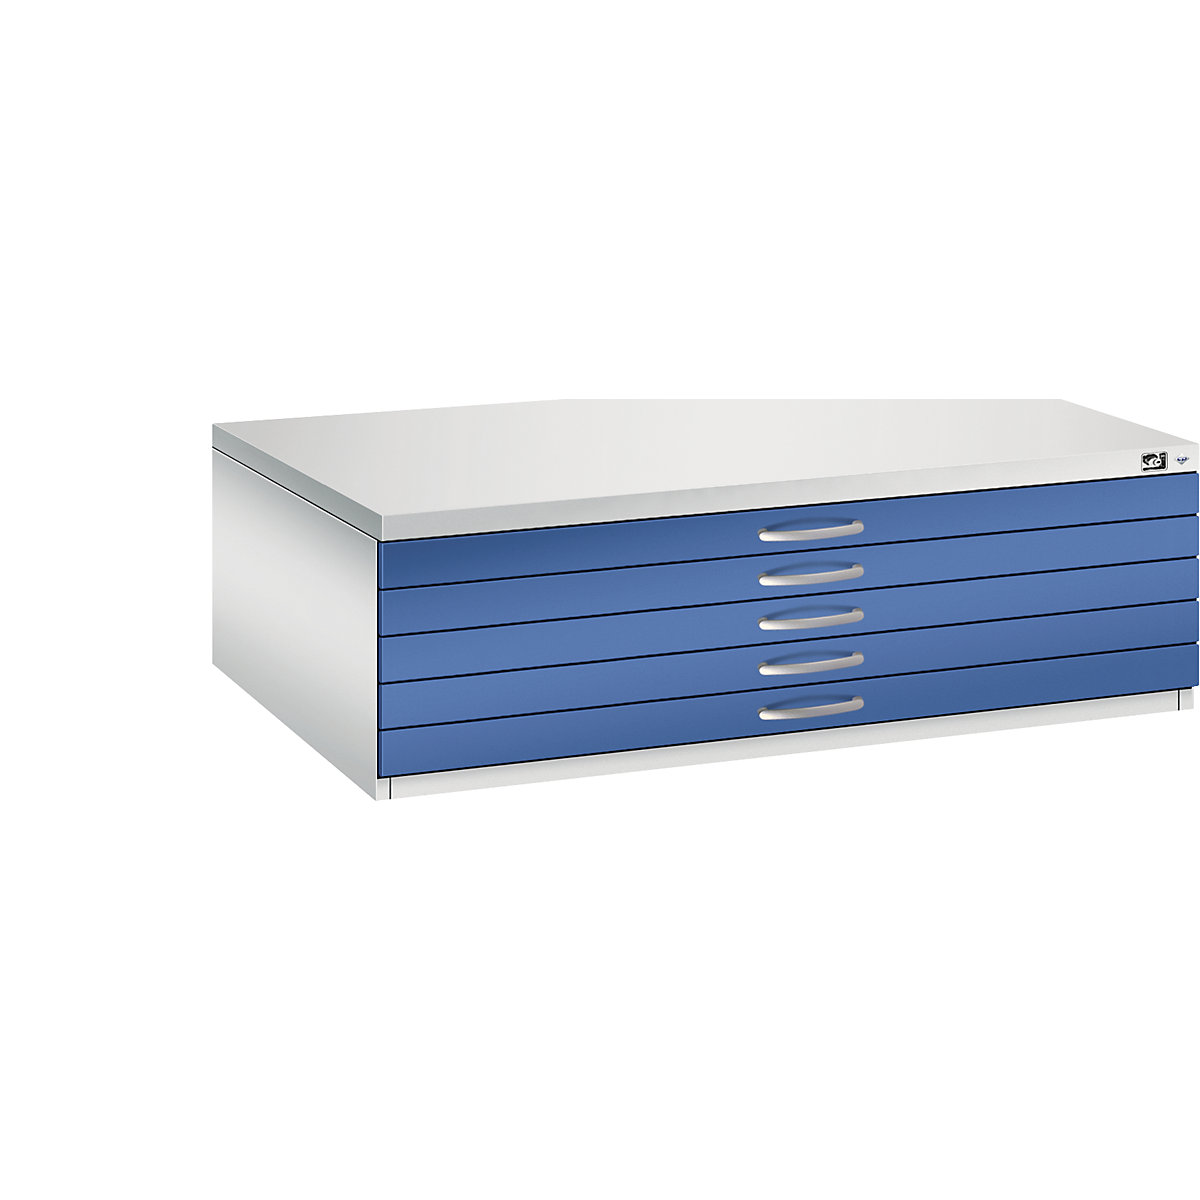 Archivio per disegni – C+P, UNI A0, 5 cassetti, altezza 420 mm, grigio chiaro / blu genziana-23